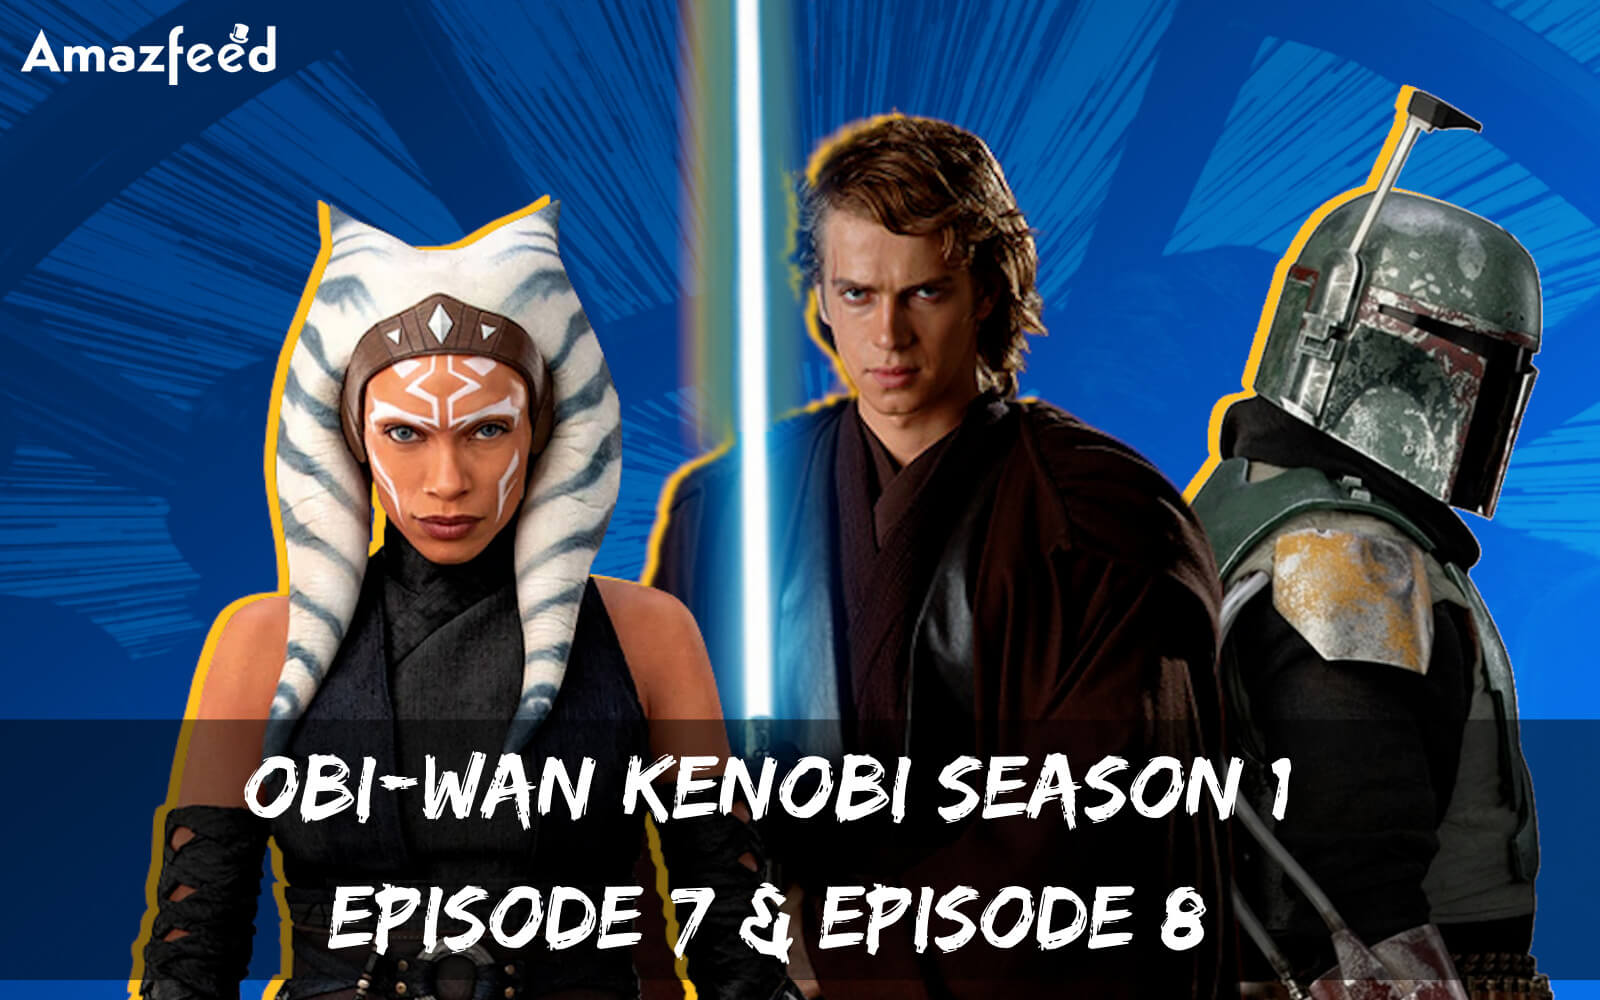 Obi-Wan Kenobi Season 1 Episode 8 release date